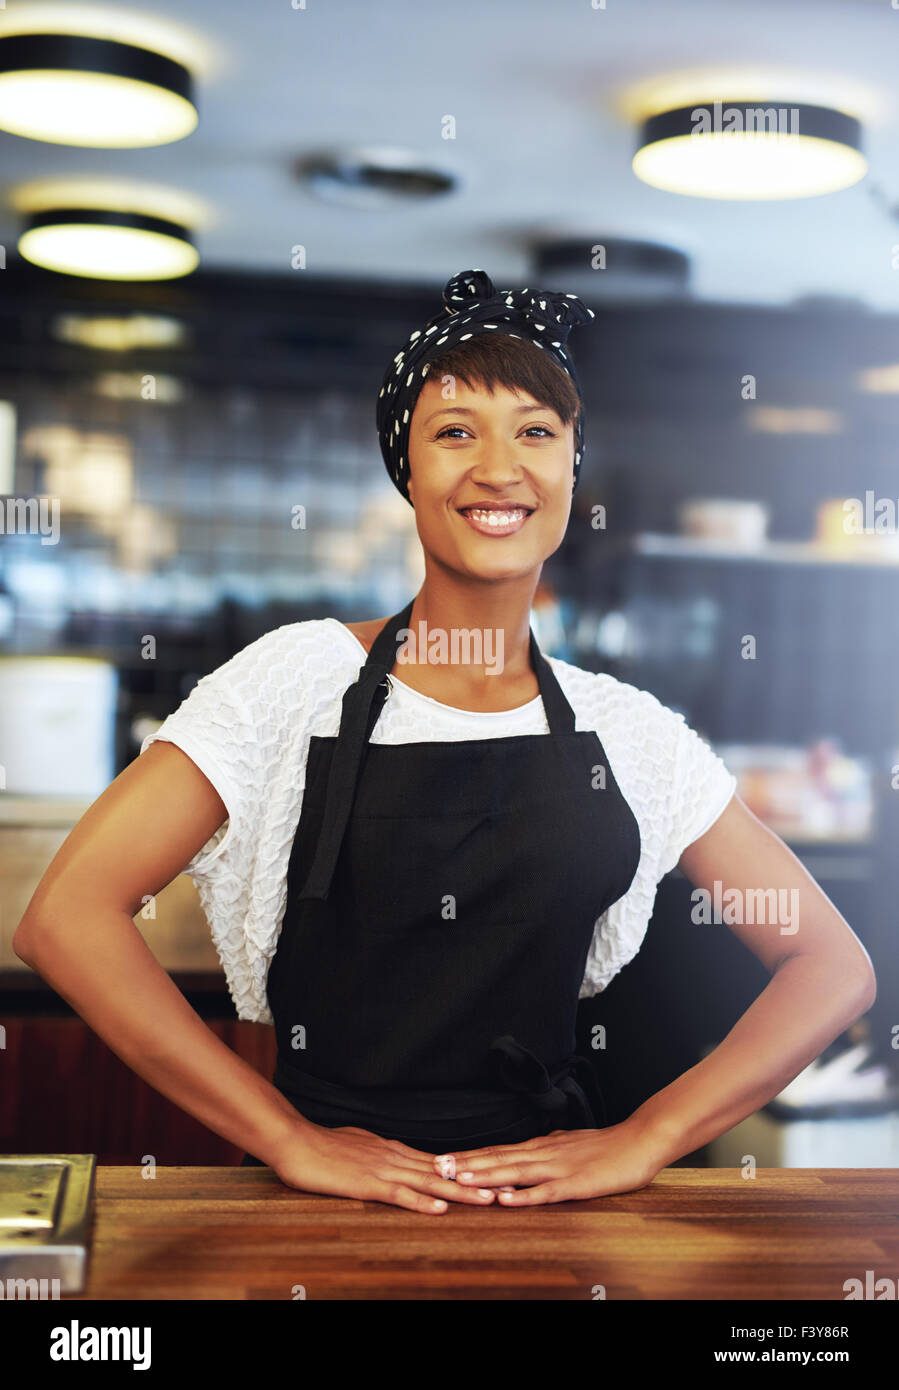 Sicher erfolgreiche junge Kleinunternehmer stehen hinter der Theke in ihrem Café geben der Kamera eine glückliche welcomi Stockfoto